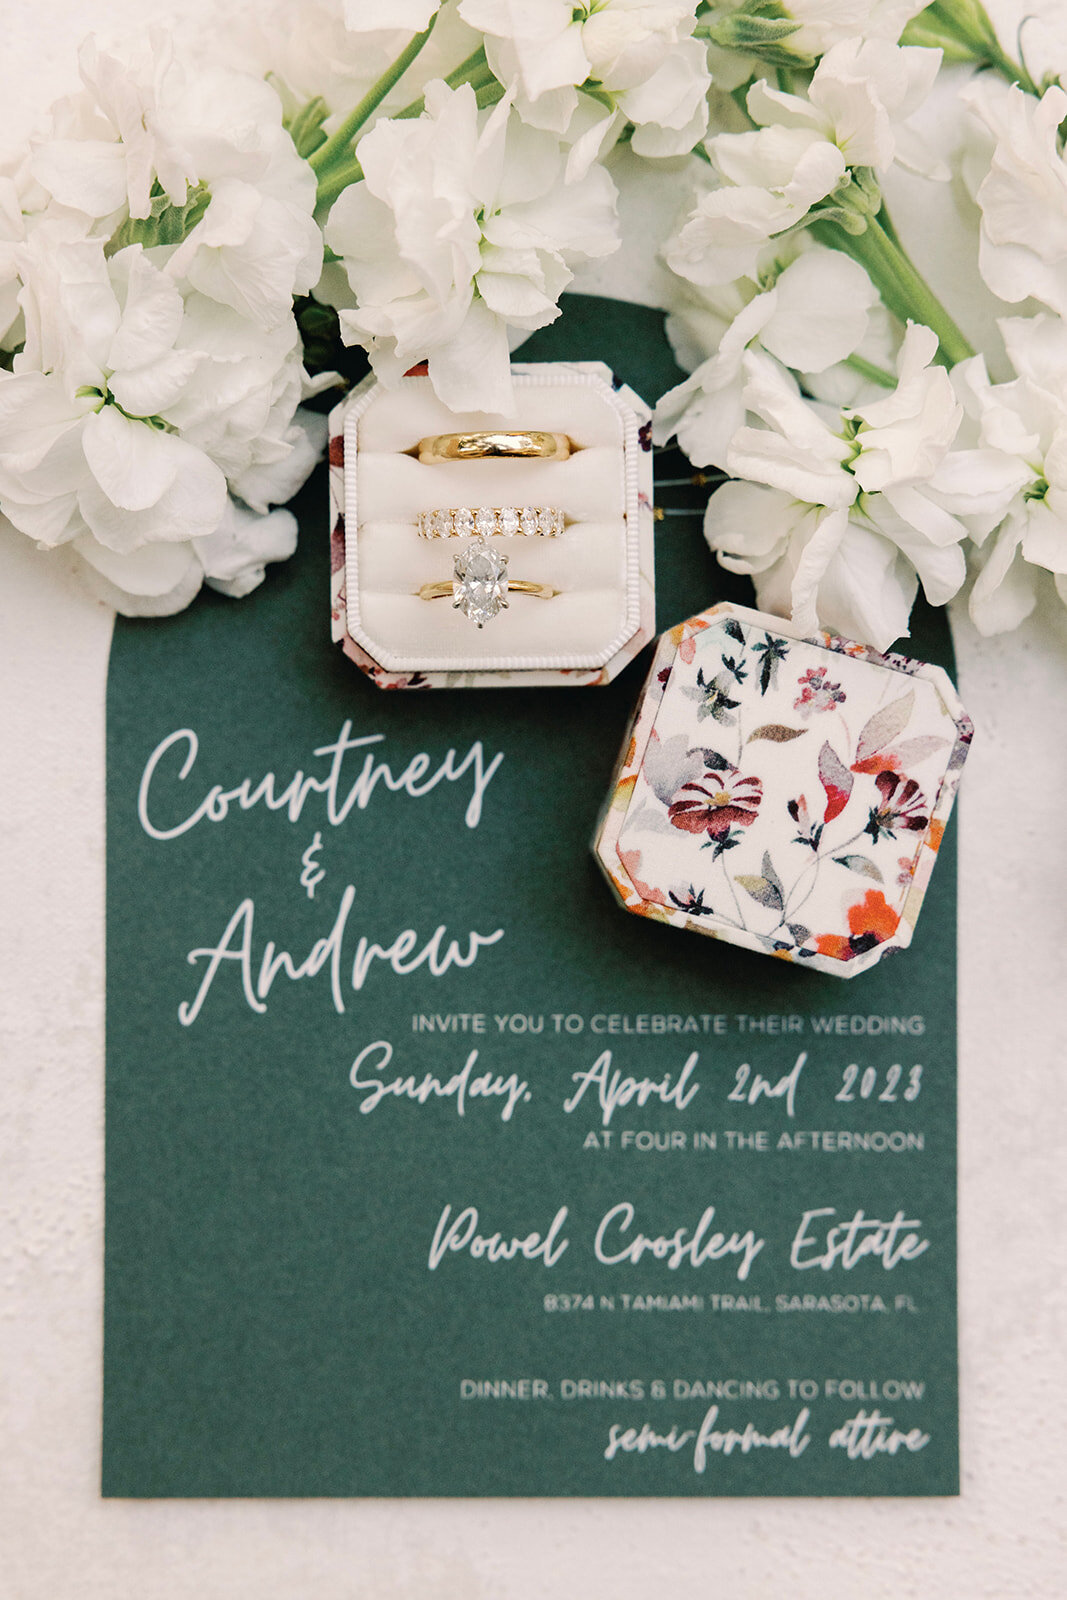 CORNELIA ZAISS PHOTOGRAPHY COURTNEY + ANDREW WEDDING 0025_websize